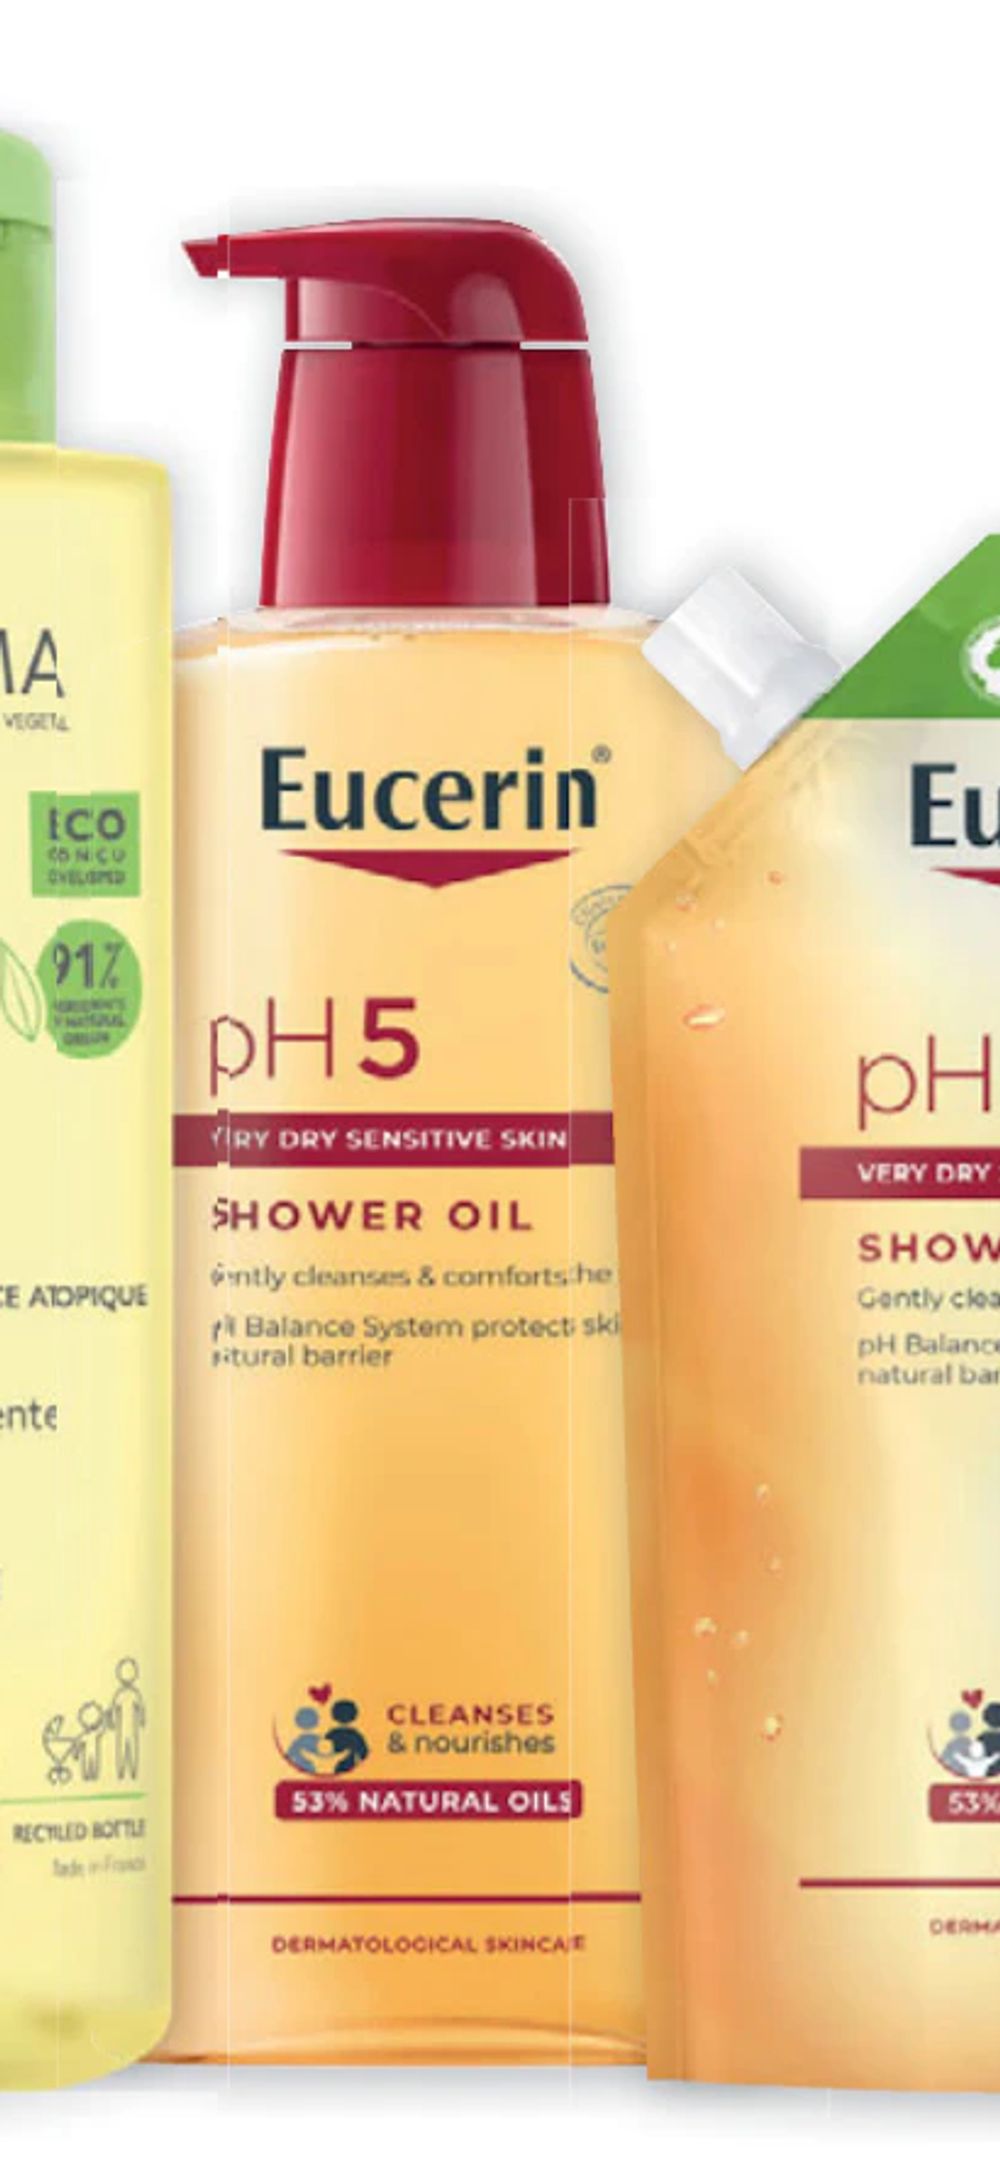 Tilbud på Eucerin pH5 Shower Oil parfymert fra Vitusapotek til 155,50 kr